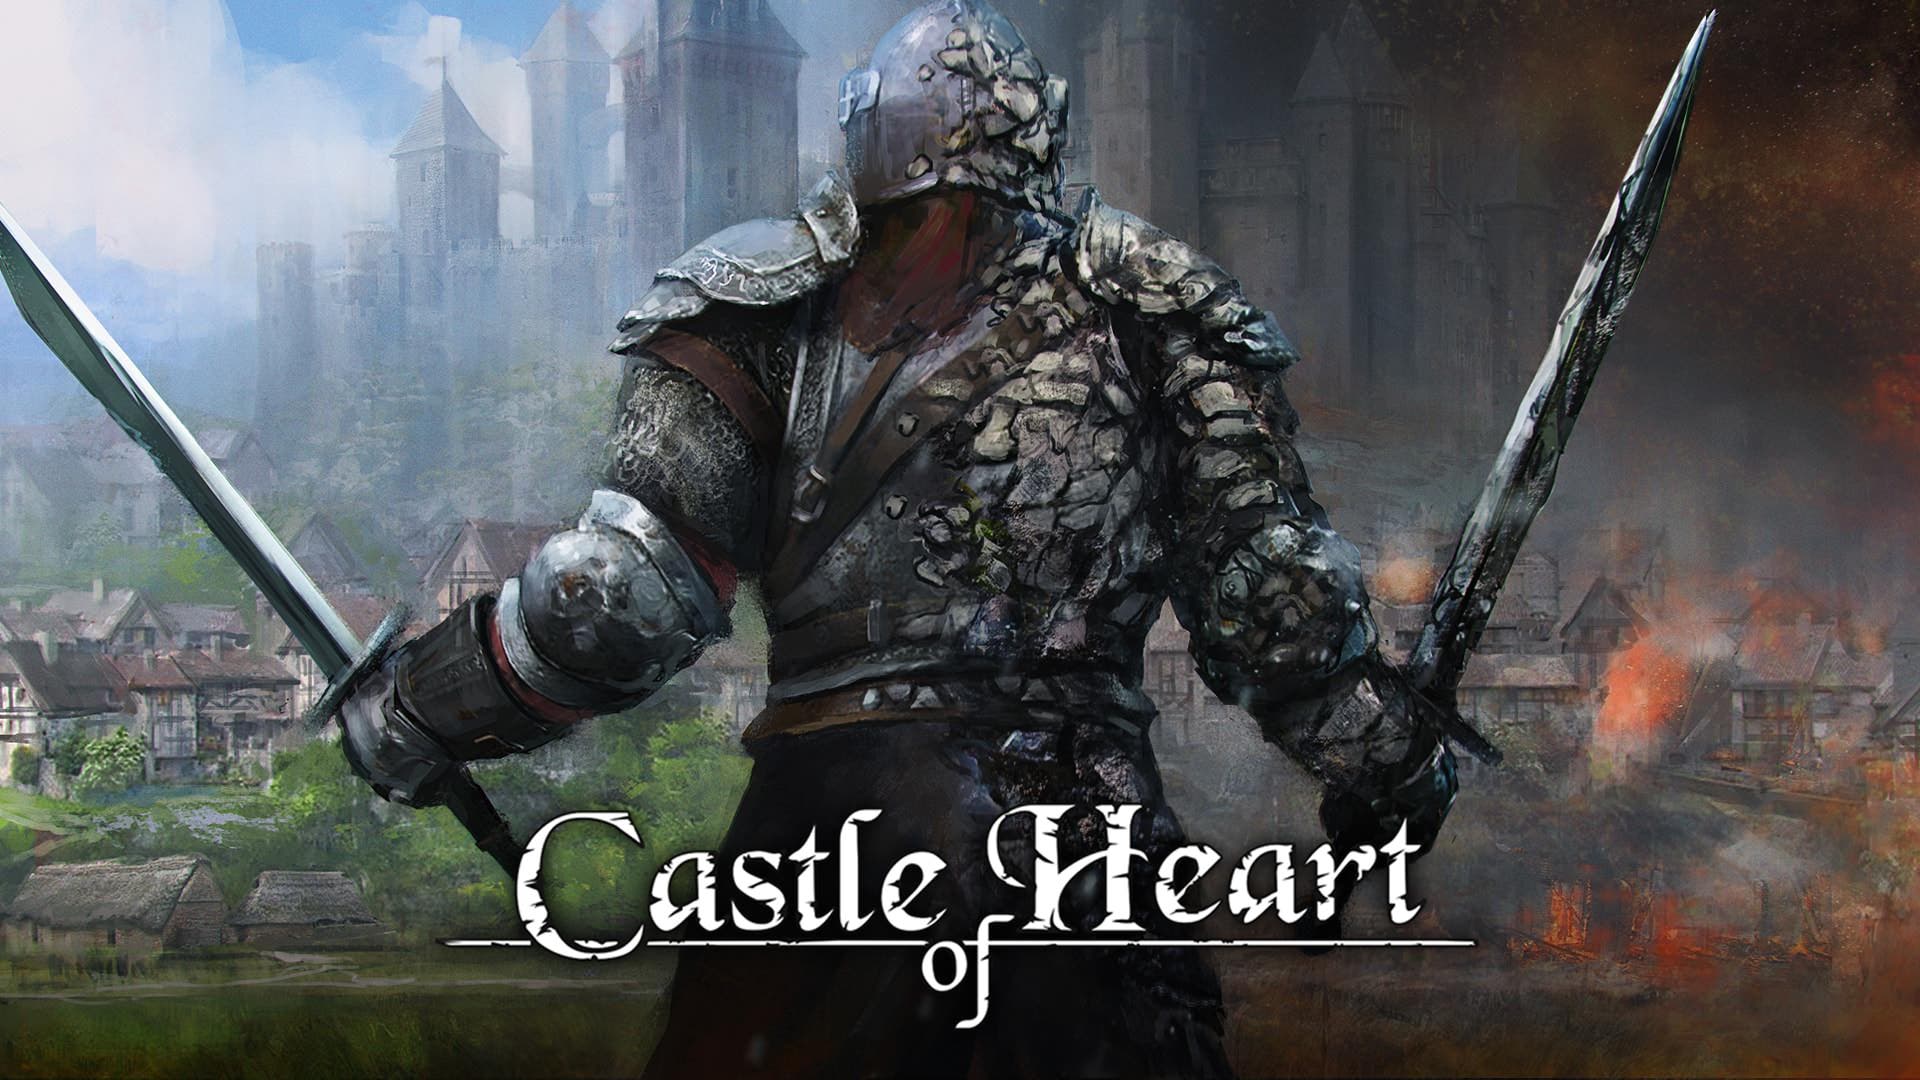 Castle of Heart recibe hoy una actualización que añade nuevas características y mejoras